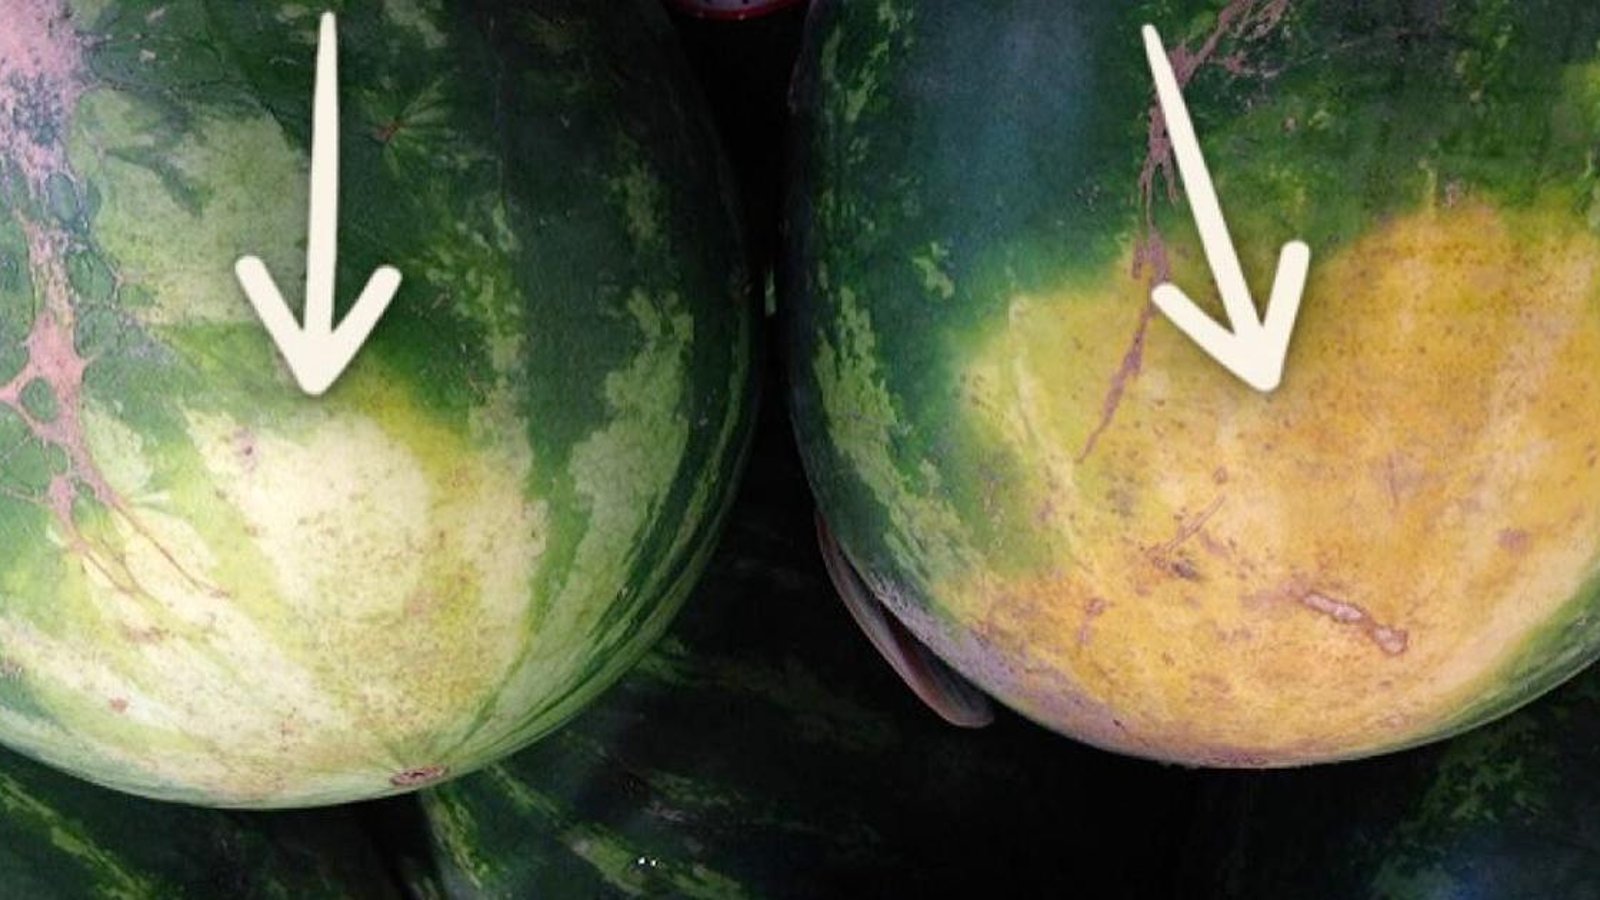 Un fermier expérimenté révèle les 5 choses qu'il faut regarder pour acheter le melon d'eau parfait.